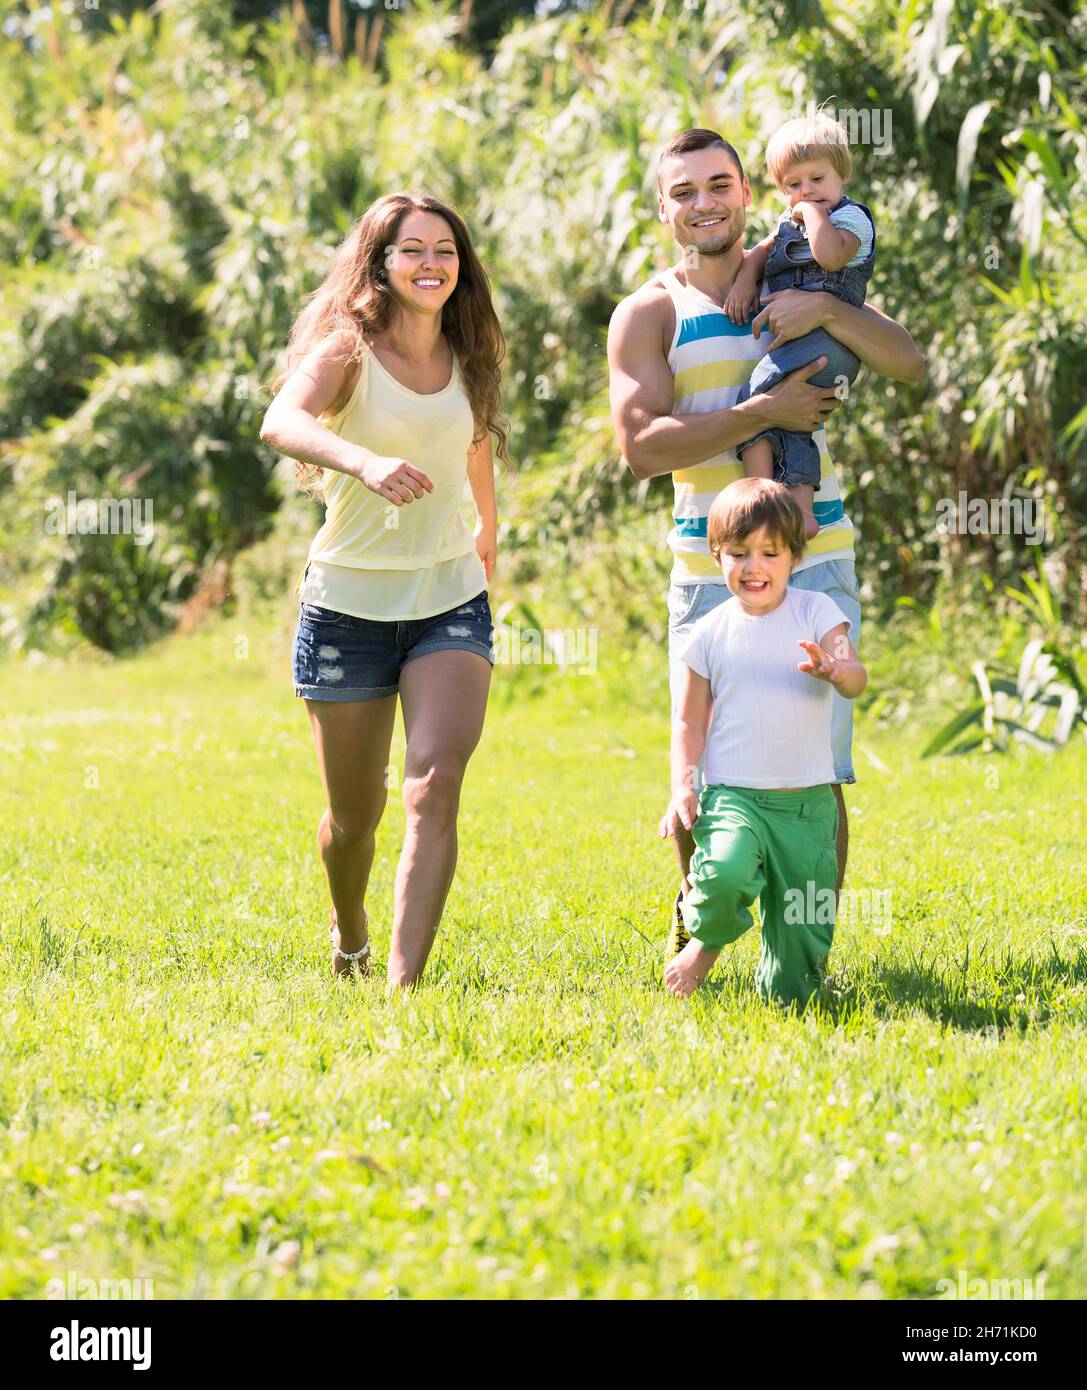 Famille de quatre personnes dans un parc ensoleillé Banque D'Images